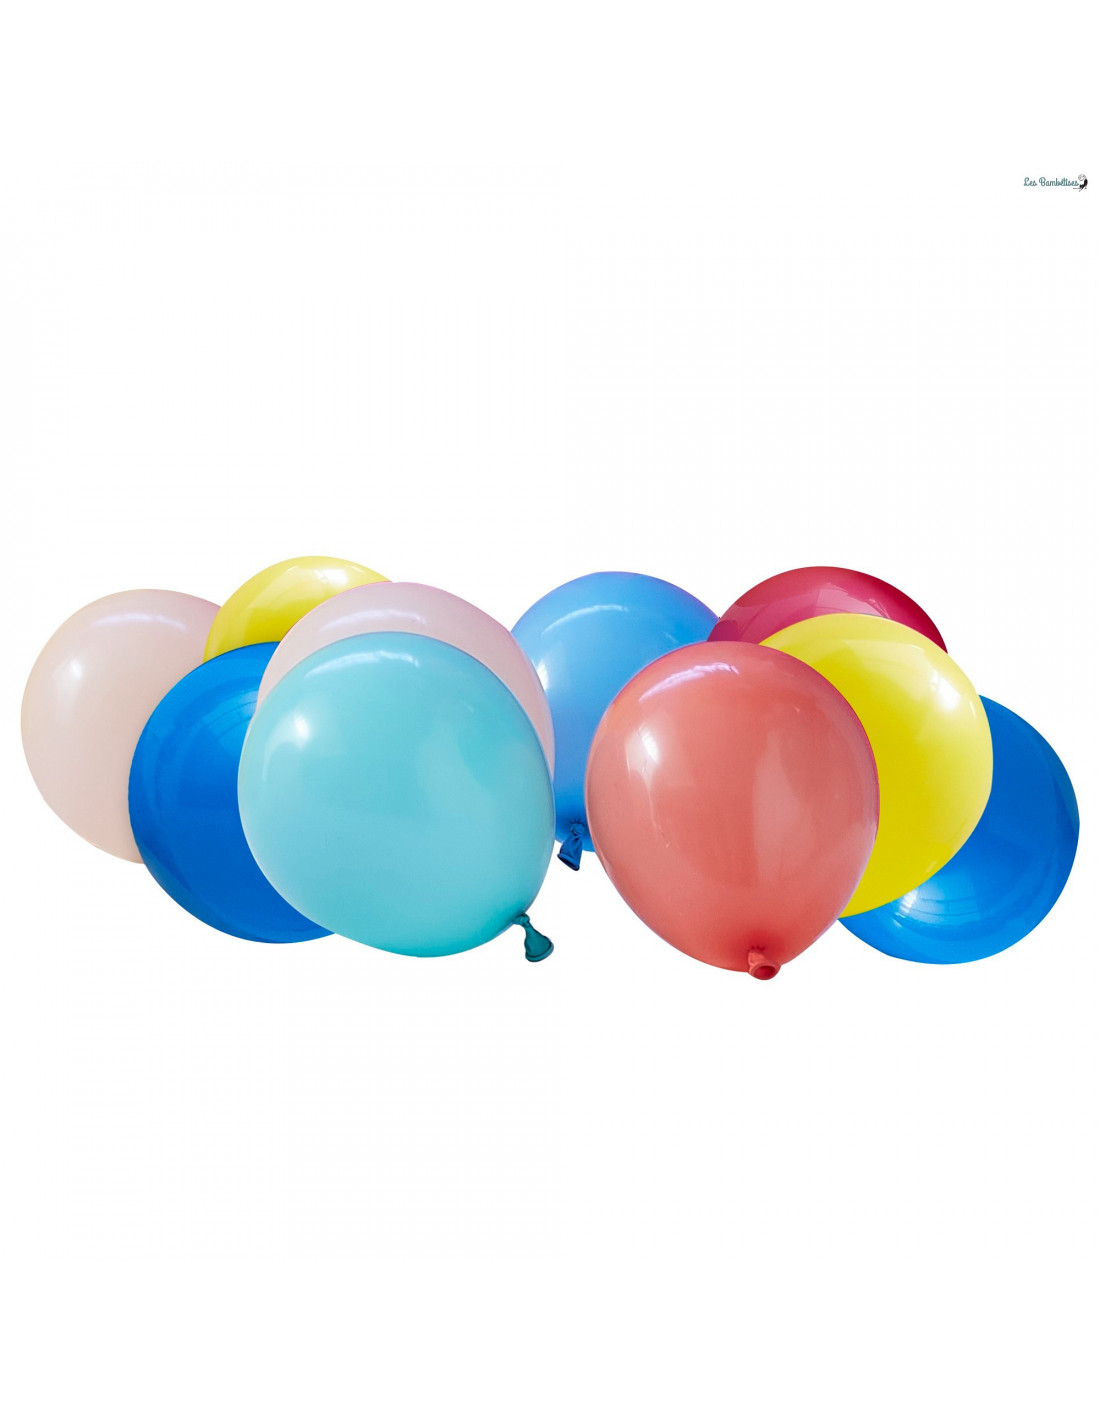 Ballon d'anniversaire surprise gonflé à l'hélium : 40 ans